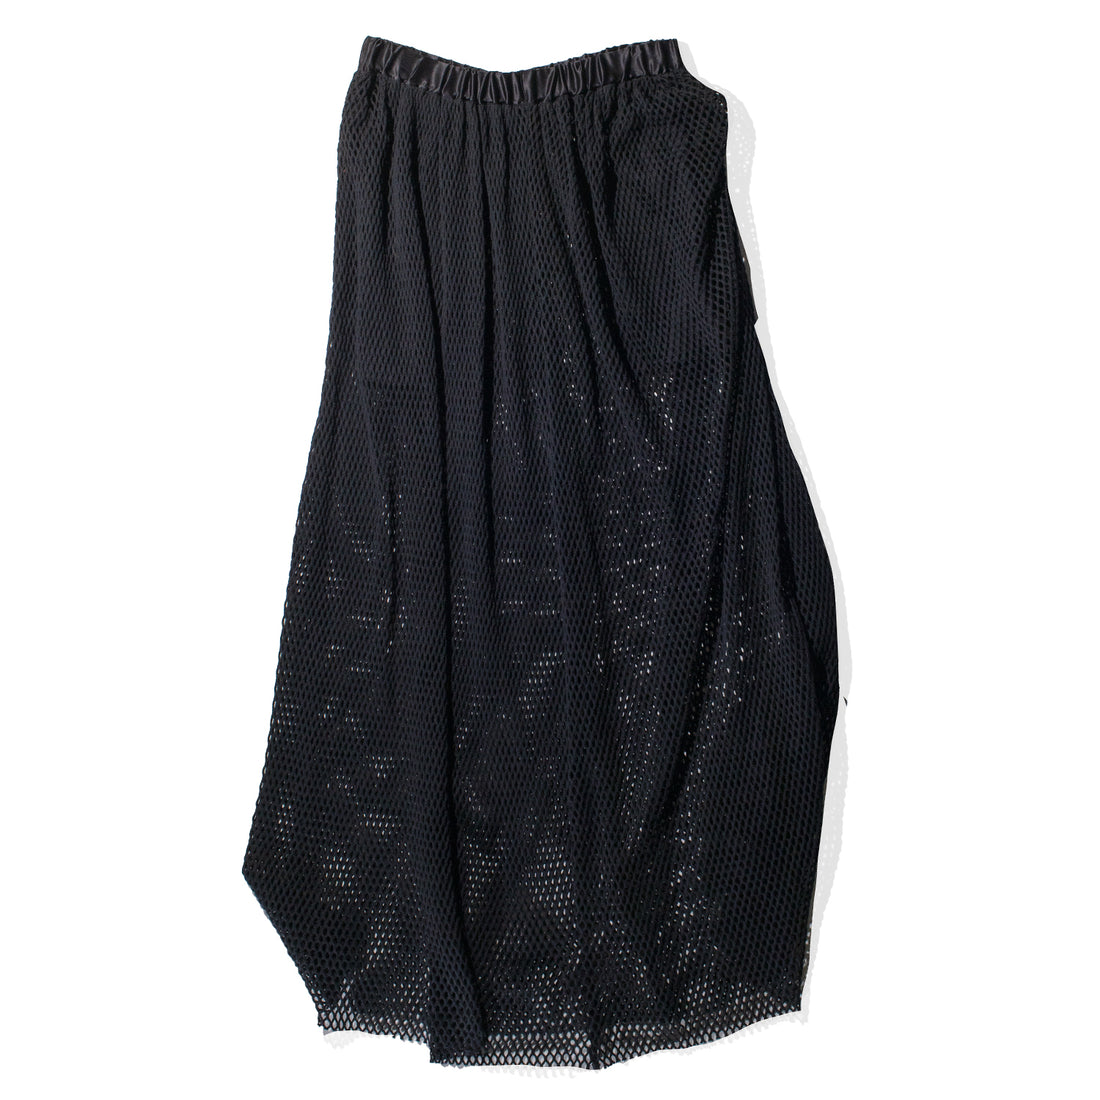 Diotima Peplos Skirt in Black Cotton Net